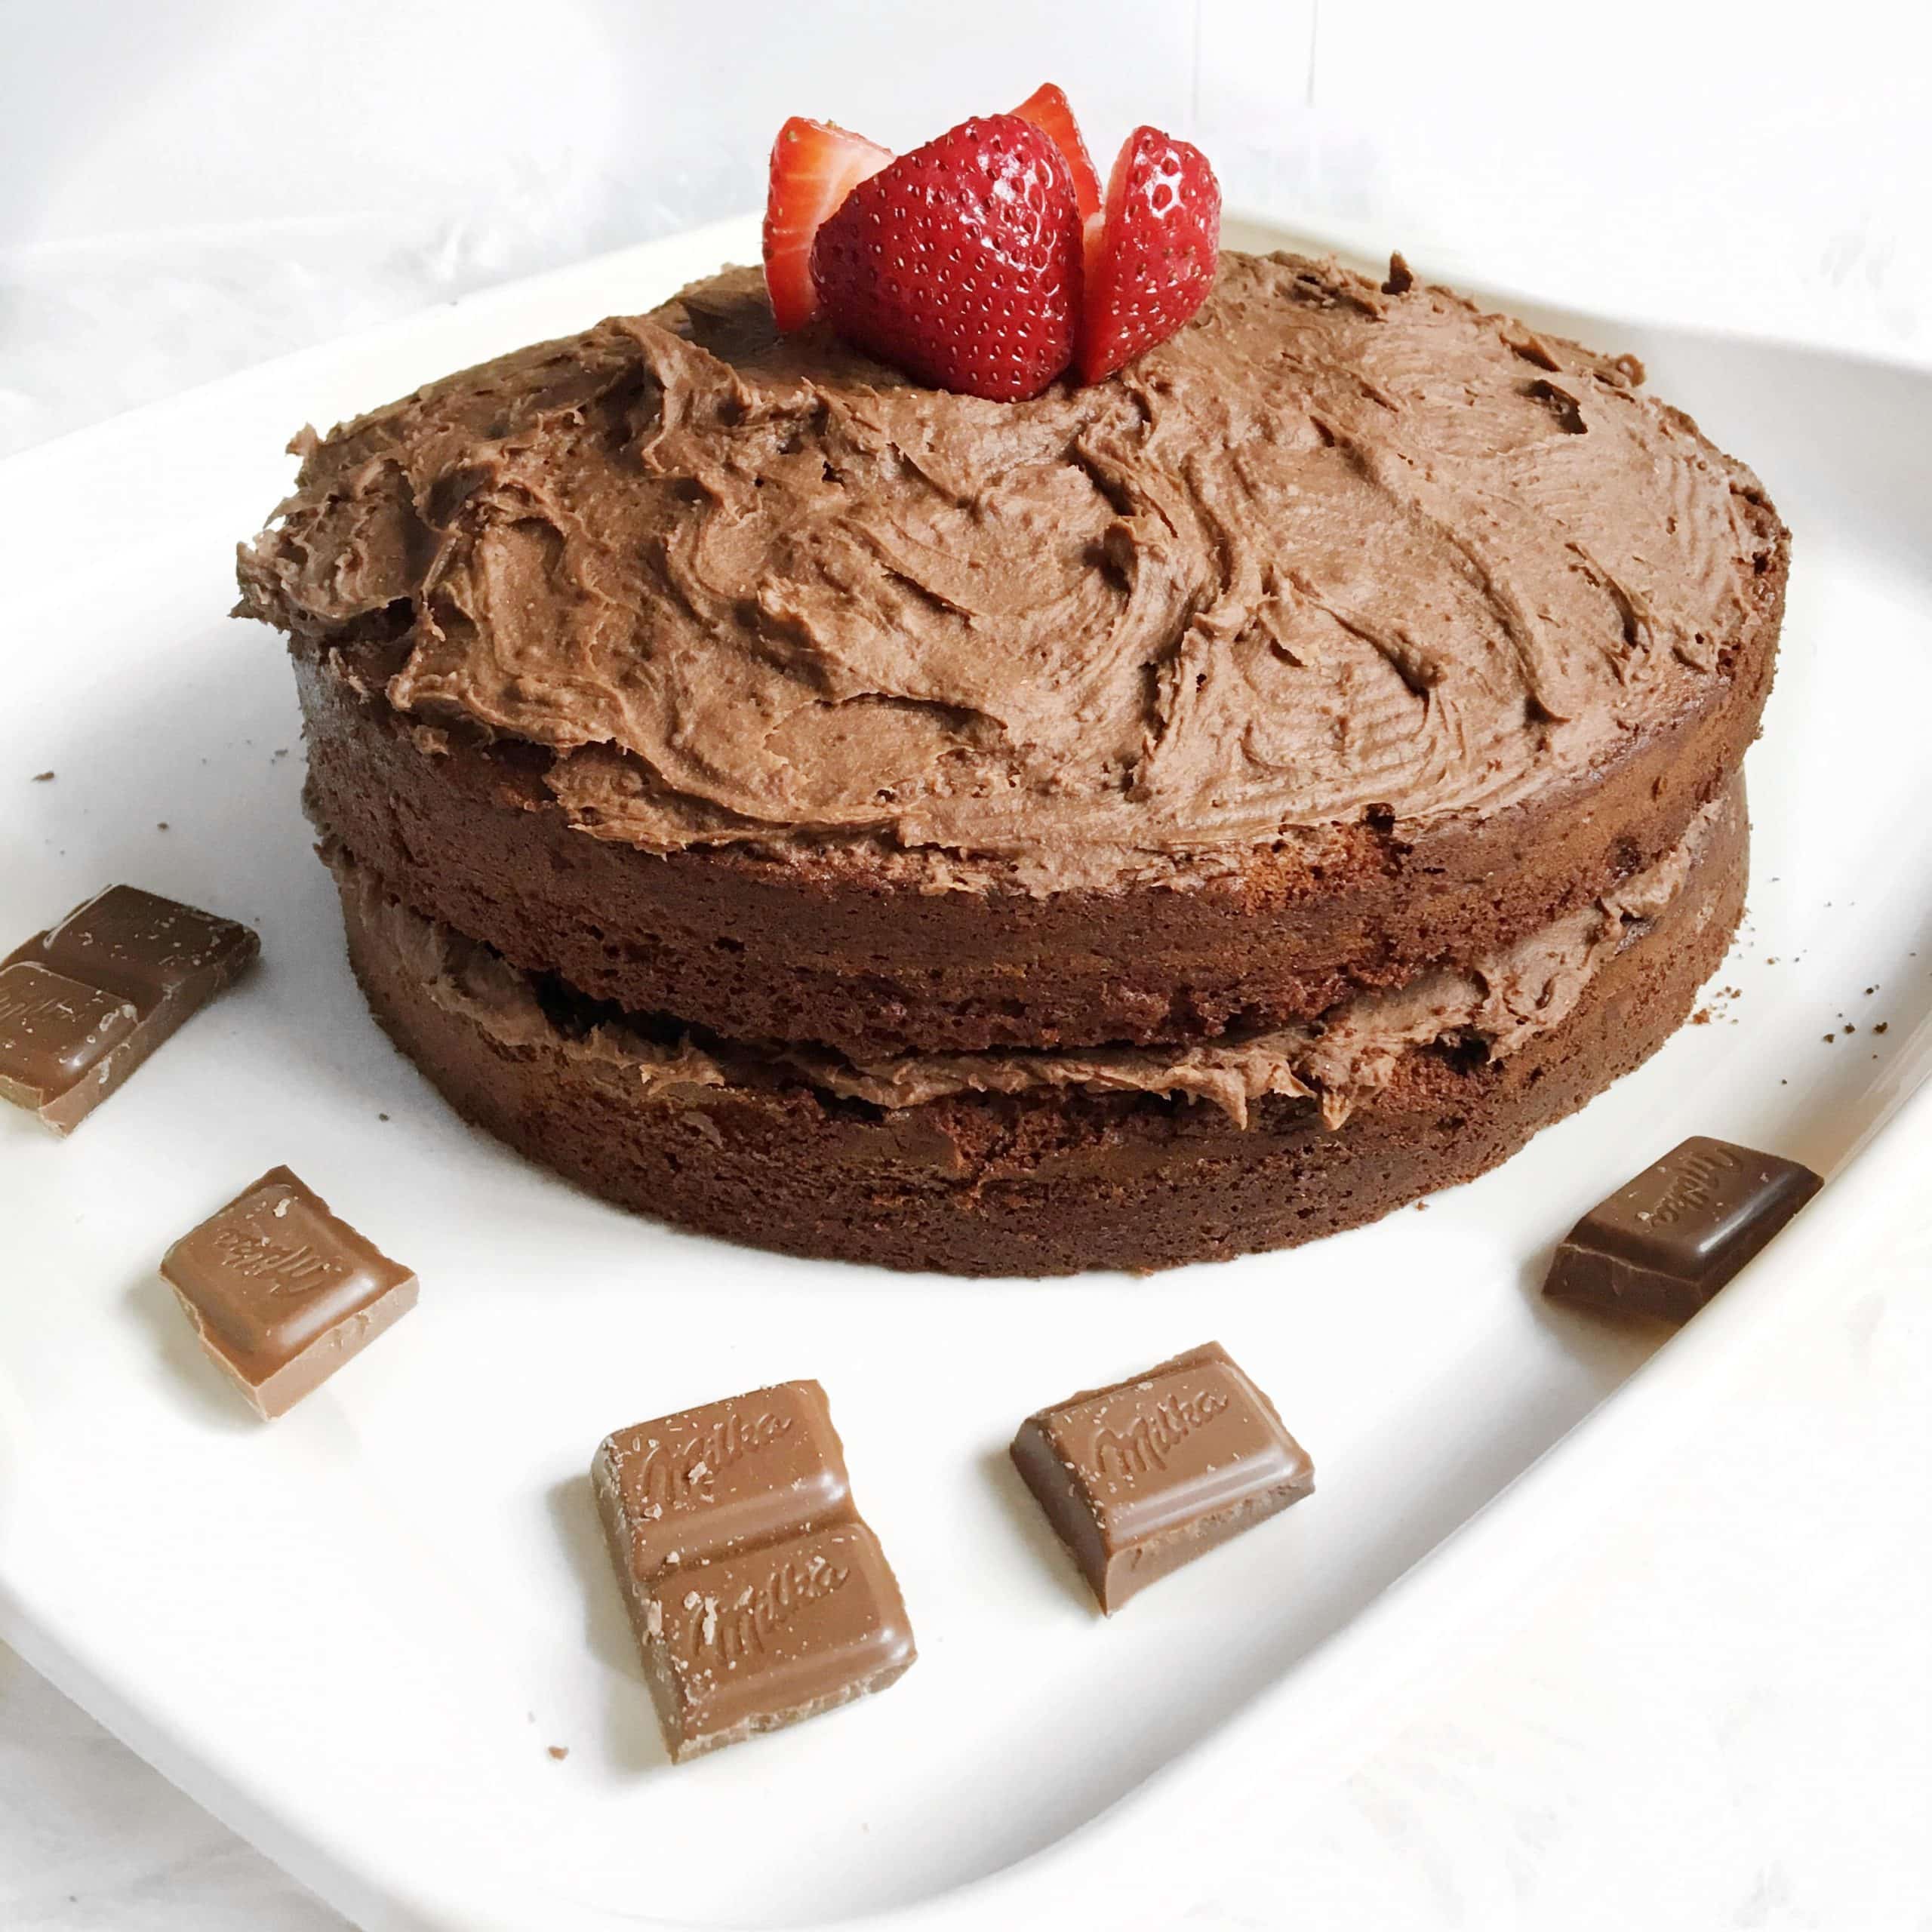 How to Bake Chocolate Fudge Cake